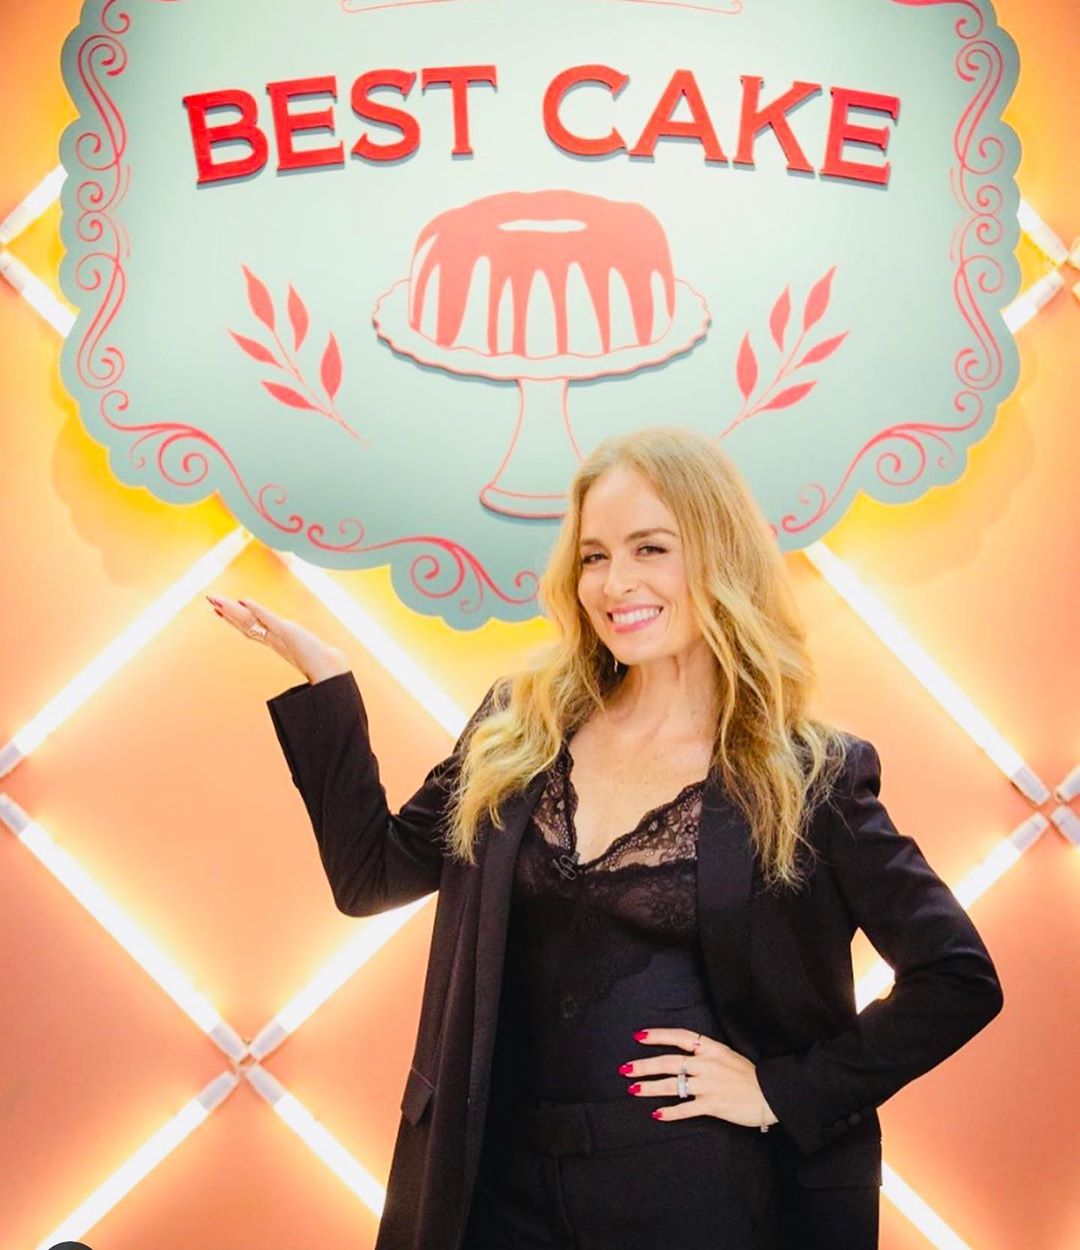 Angélica globo no reality show fictício Best Cake, de A Dona do Pedaço (Foto: Reprodução/Instagram)